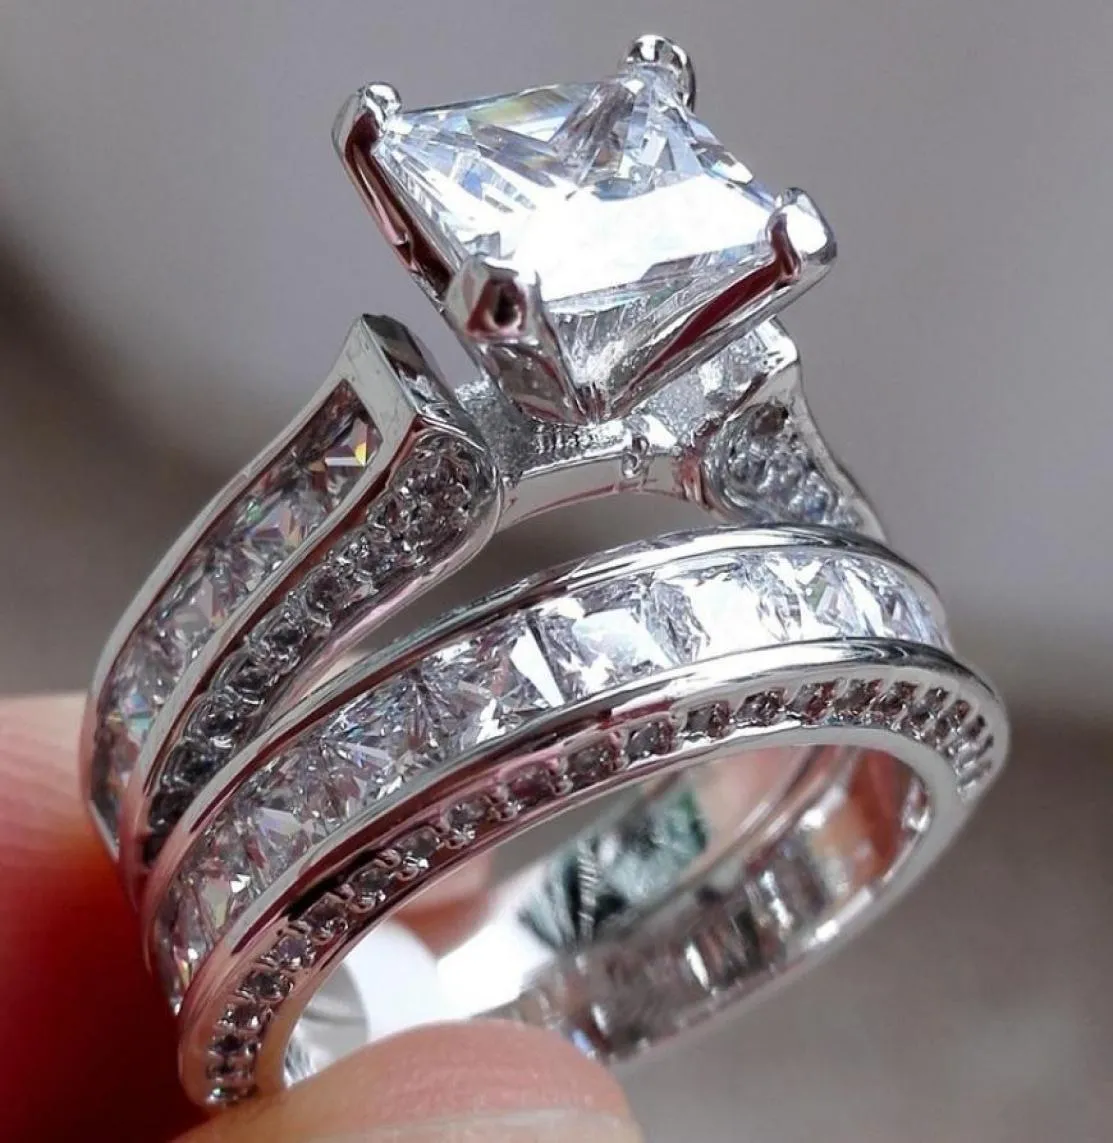 Tamaño de lujo 5678910 Joyería 10kt oro blanco lleno Topacio Princesa corte diamante simulado Anillo de bodas conjunto regalo AB18467420756